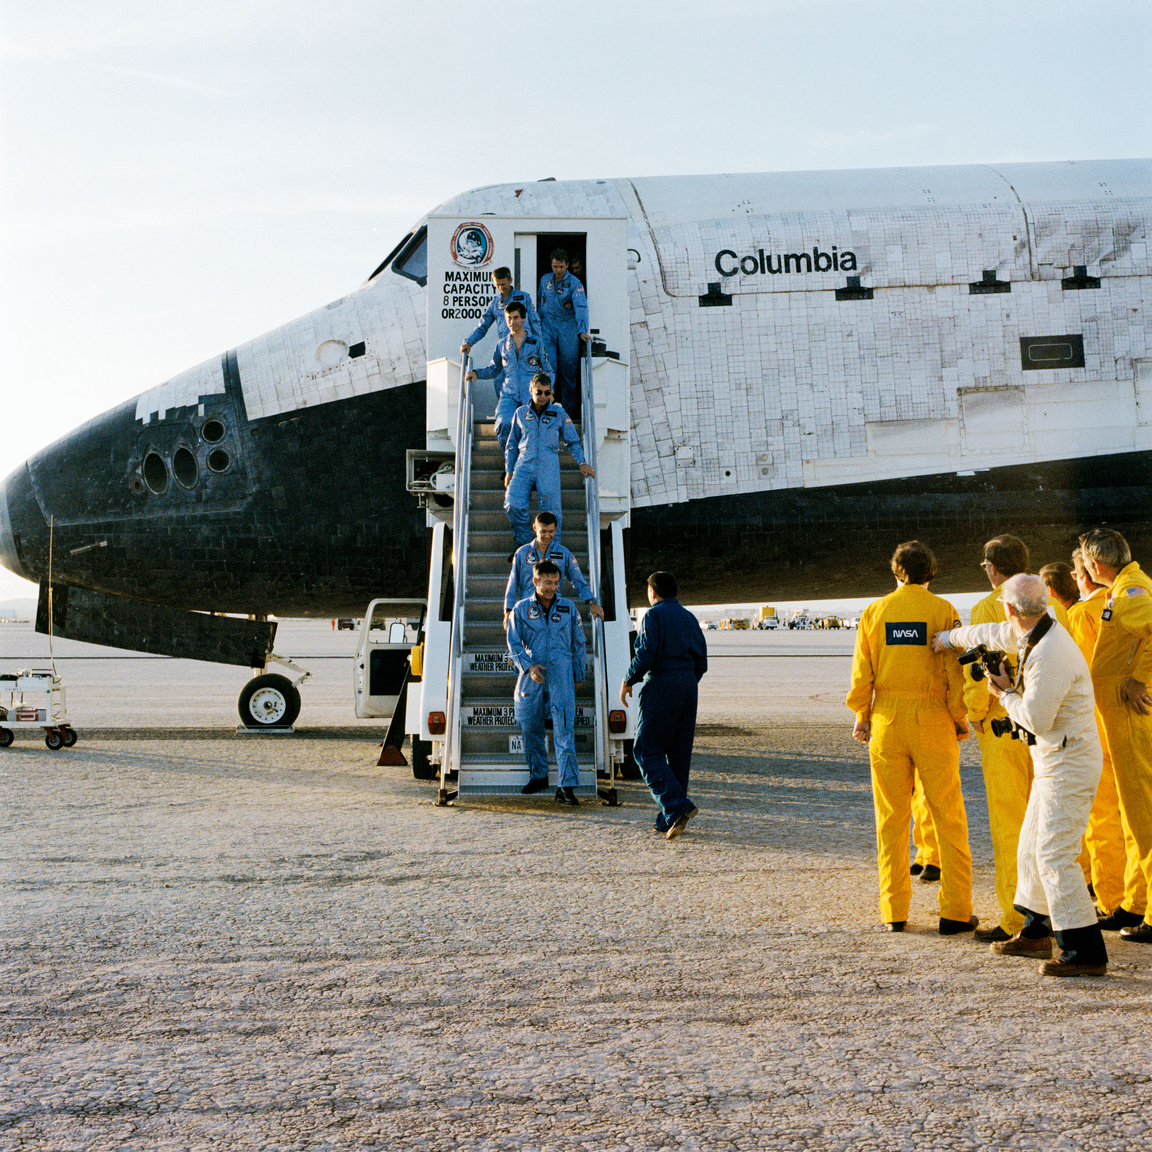 1983. december 8. A tíz napig tartó STS-9 űrsiklóküldetés hatfős legénysége kiszáll a Columbia űrrepülőgépből az kaliforniai Edwards légibázison. Az élen John W. Young parancsnok, őt a pilóta Brewster H. Shaw követi, majd sorban mögöttük Robert A. R. Parker; dr. Ulf Merbold; Owen K. Garriott és dr. Byron K. Lichtenberg specialisták. A nyugatnémet dr. Merbold volt az Európai űrügynökség (ESA) első űrhajósa, aki amerikai űrhajón utazhatott. 